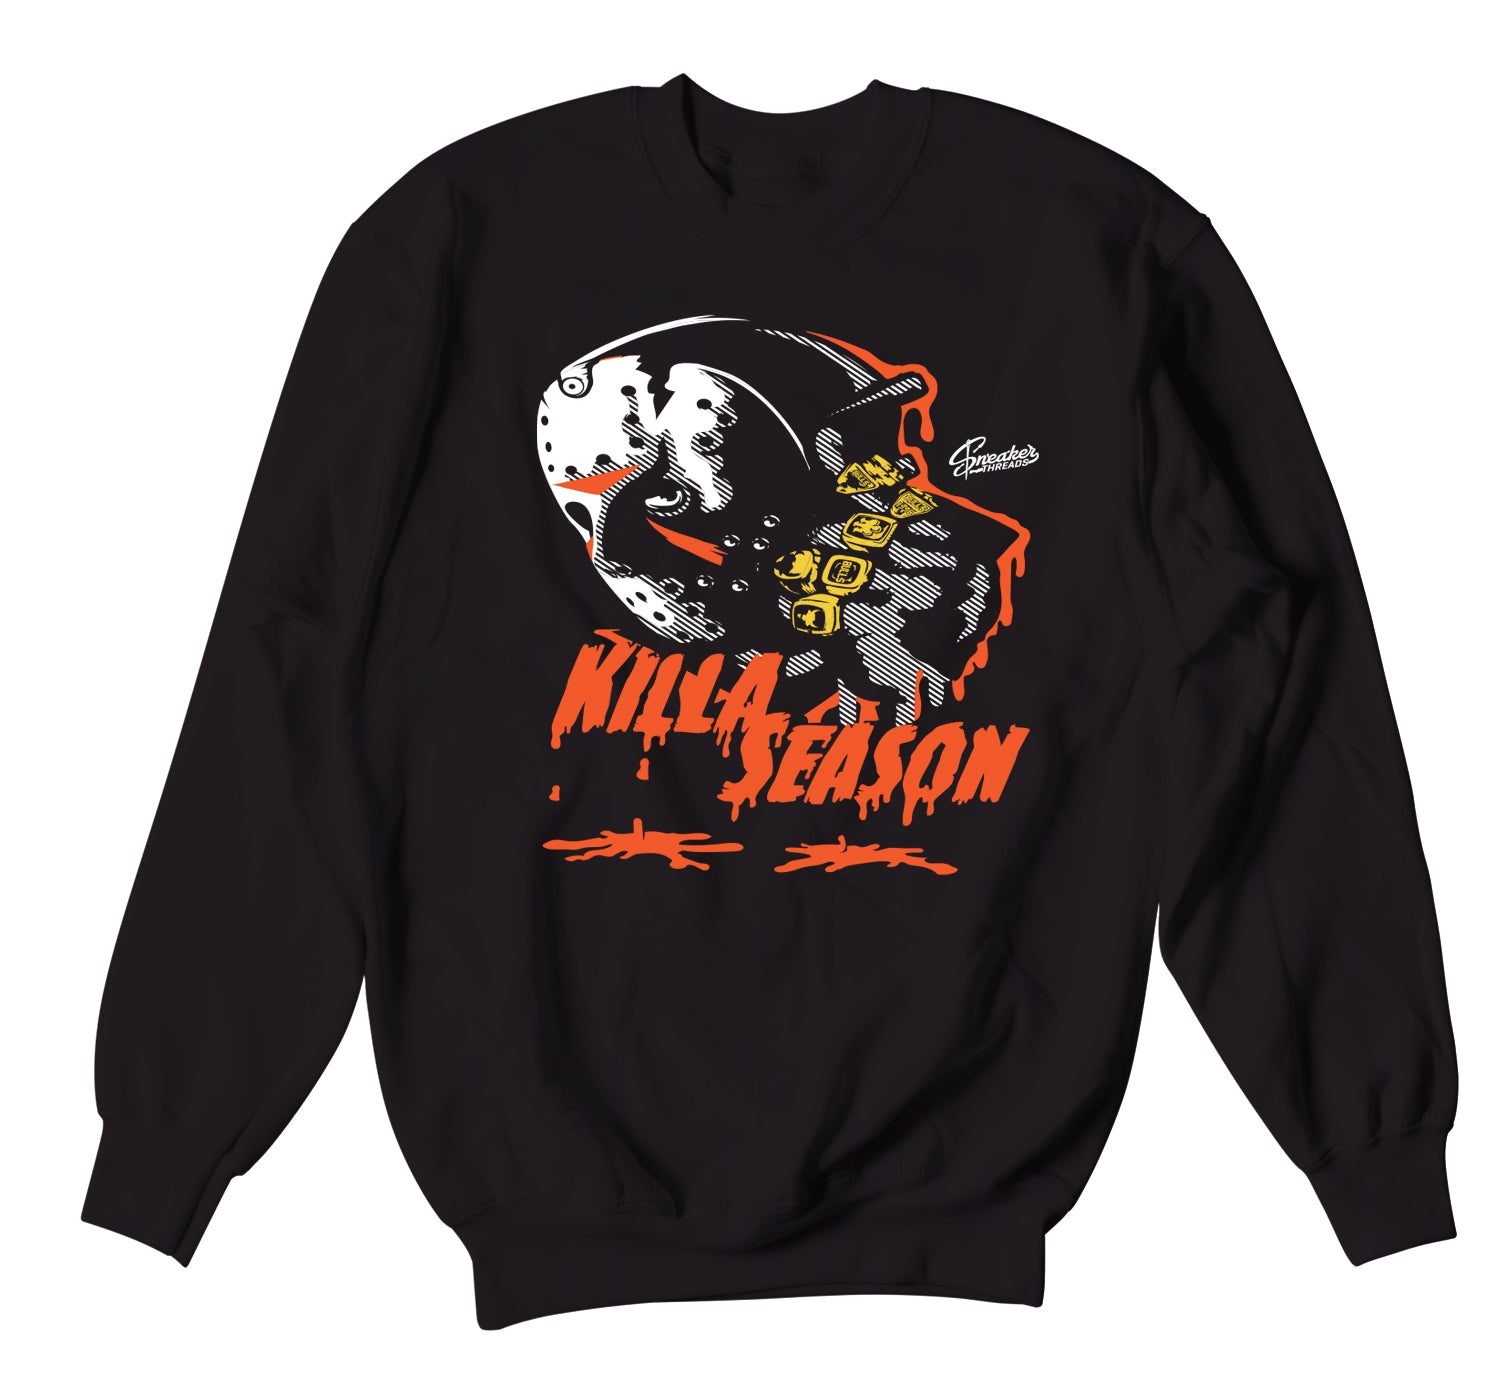 Retro 5 Orange Blaze Sweater - Killa Season - Black